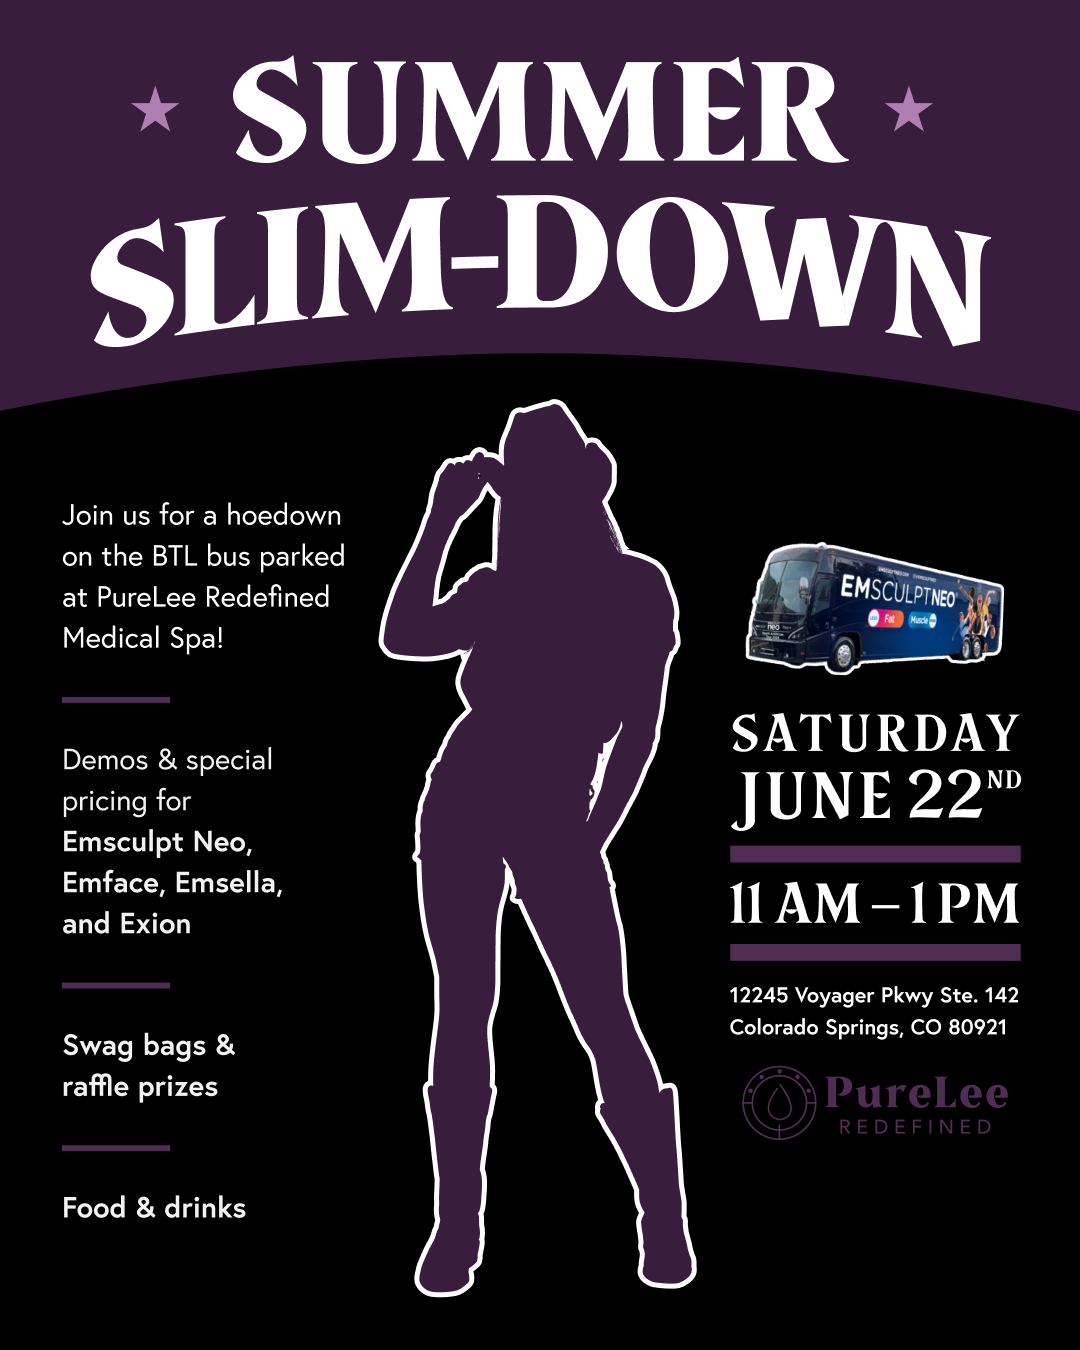 Summer Slim down event banner PureLee Redefined